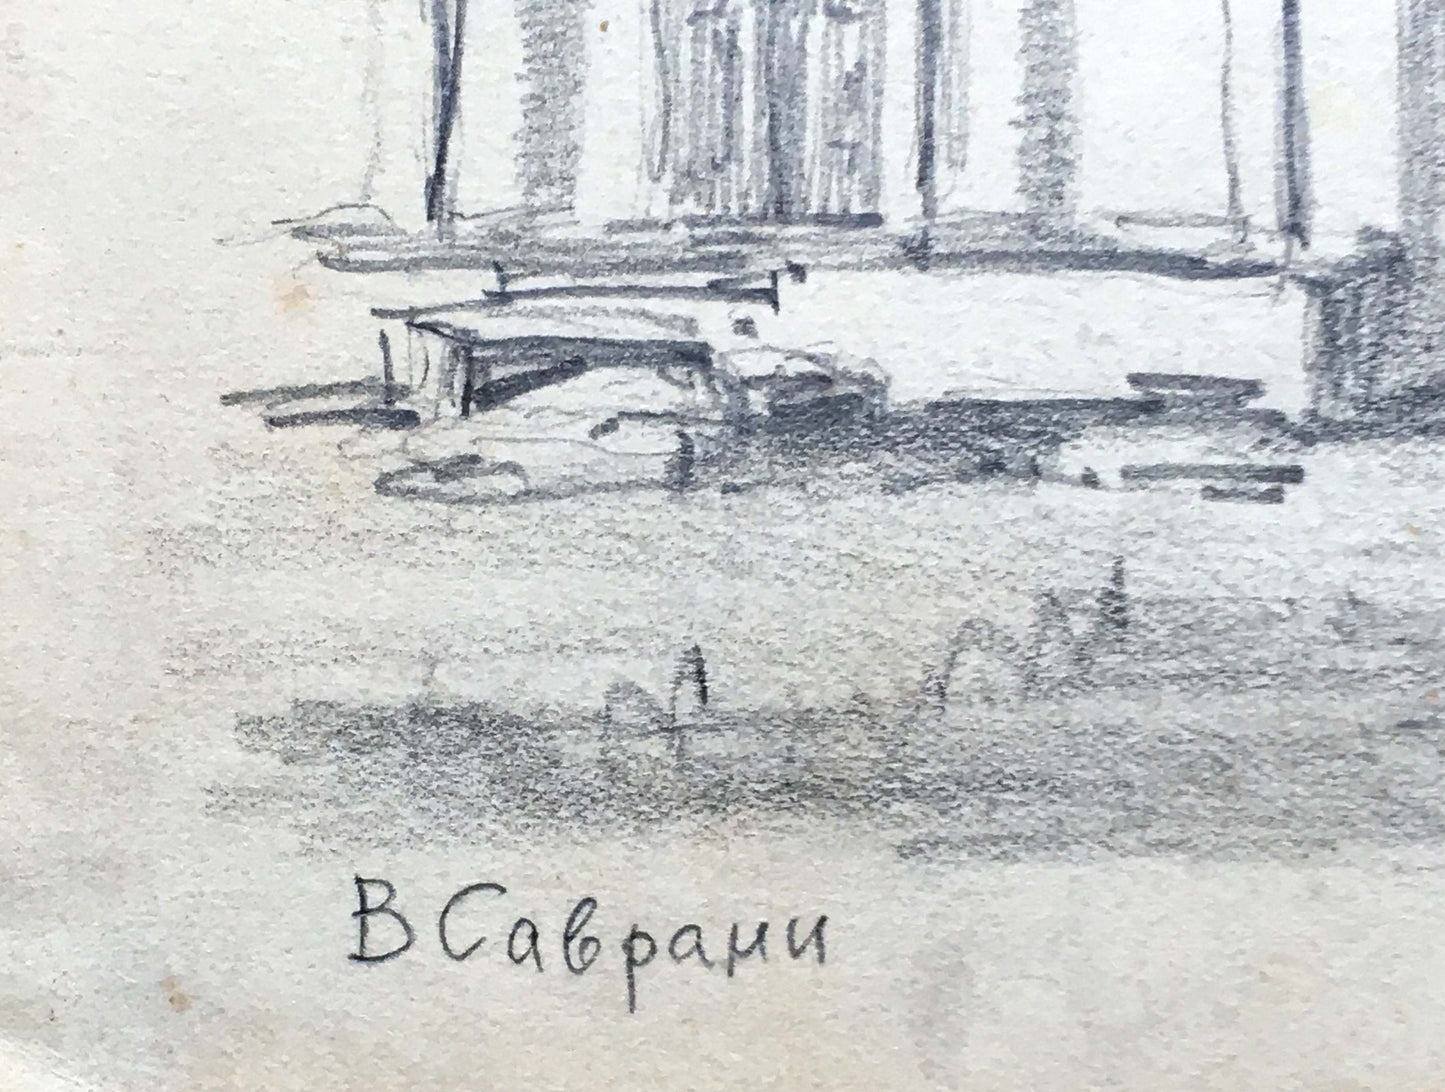 Dmitry Lednev's interpretation of "Savrani Village" in pencil